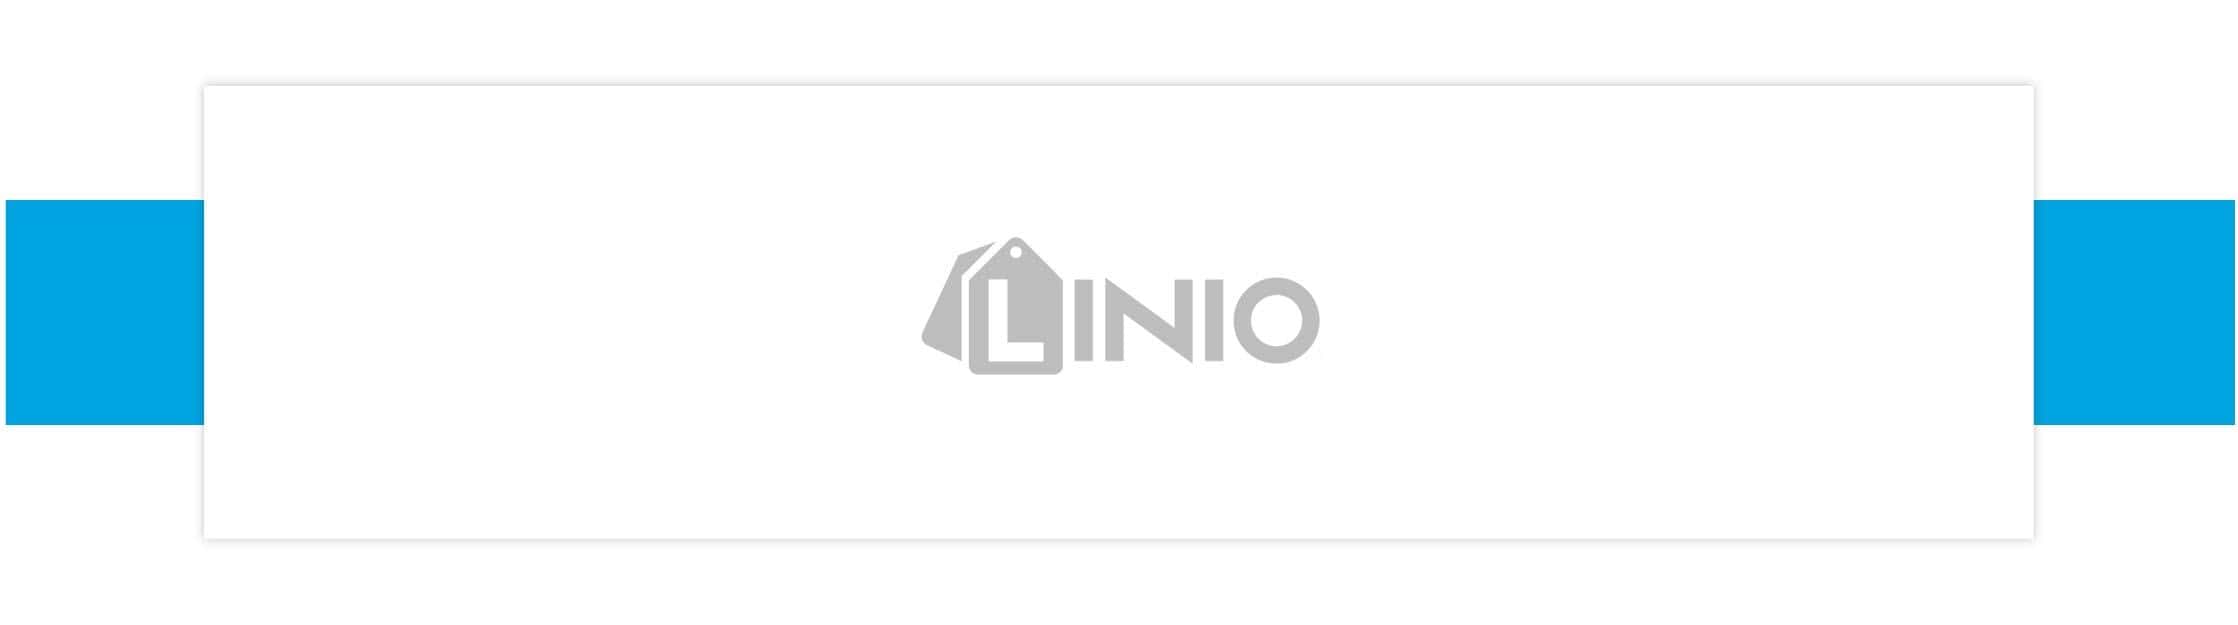 El logo de Linio.